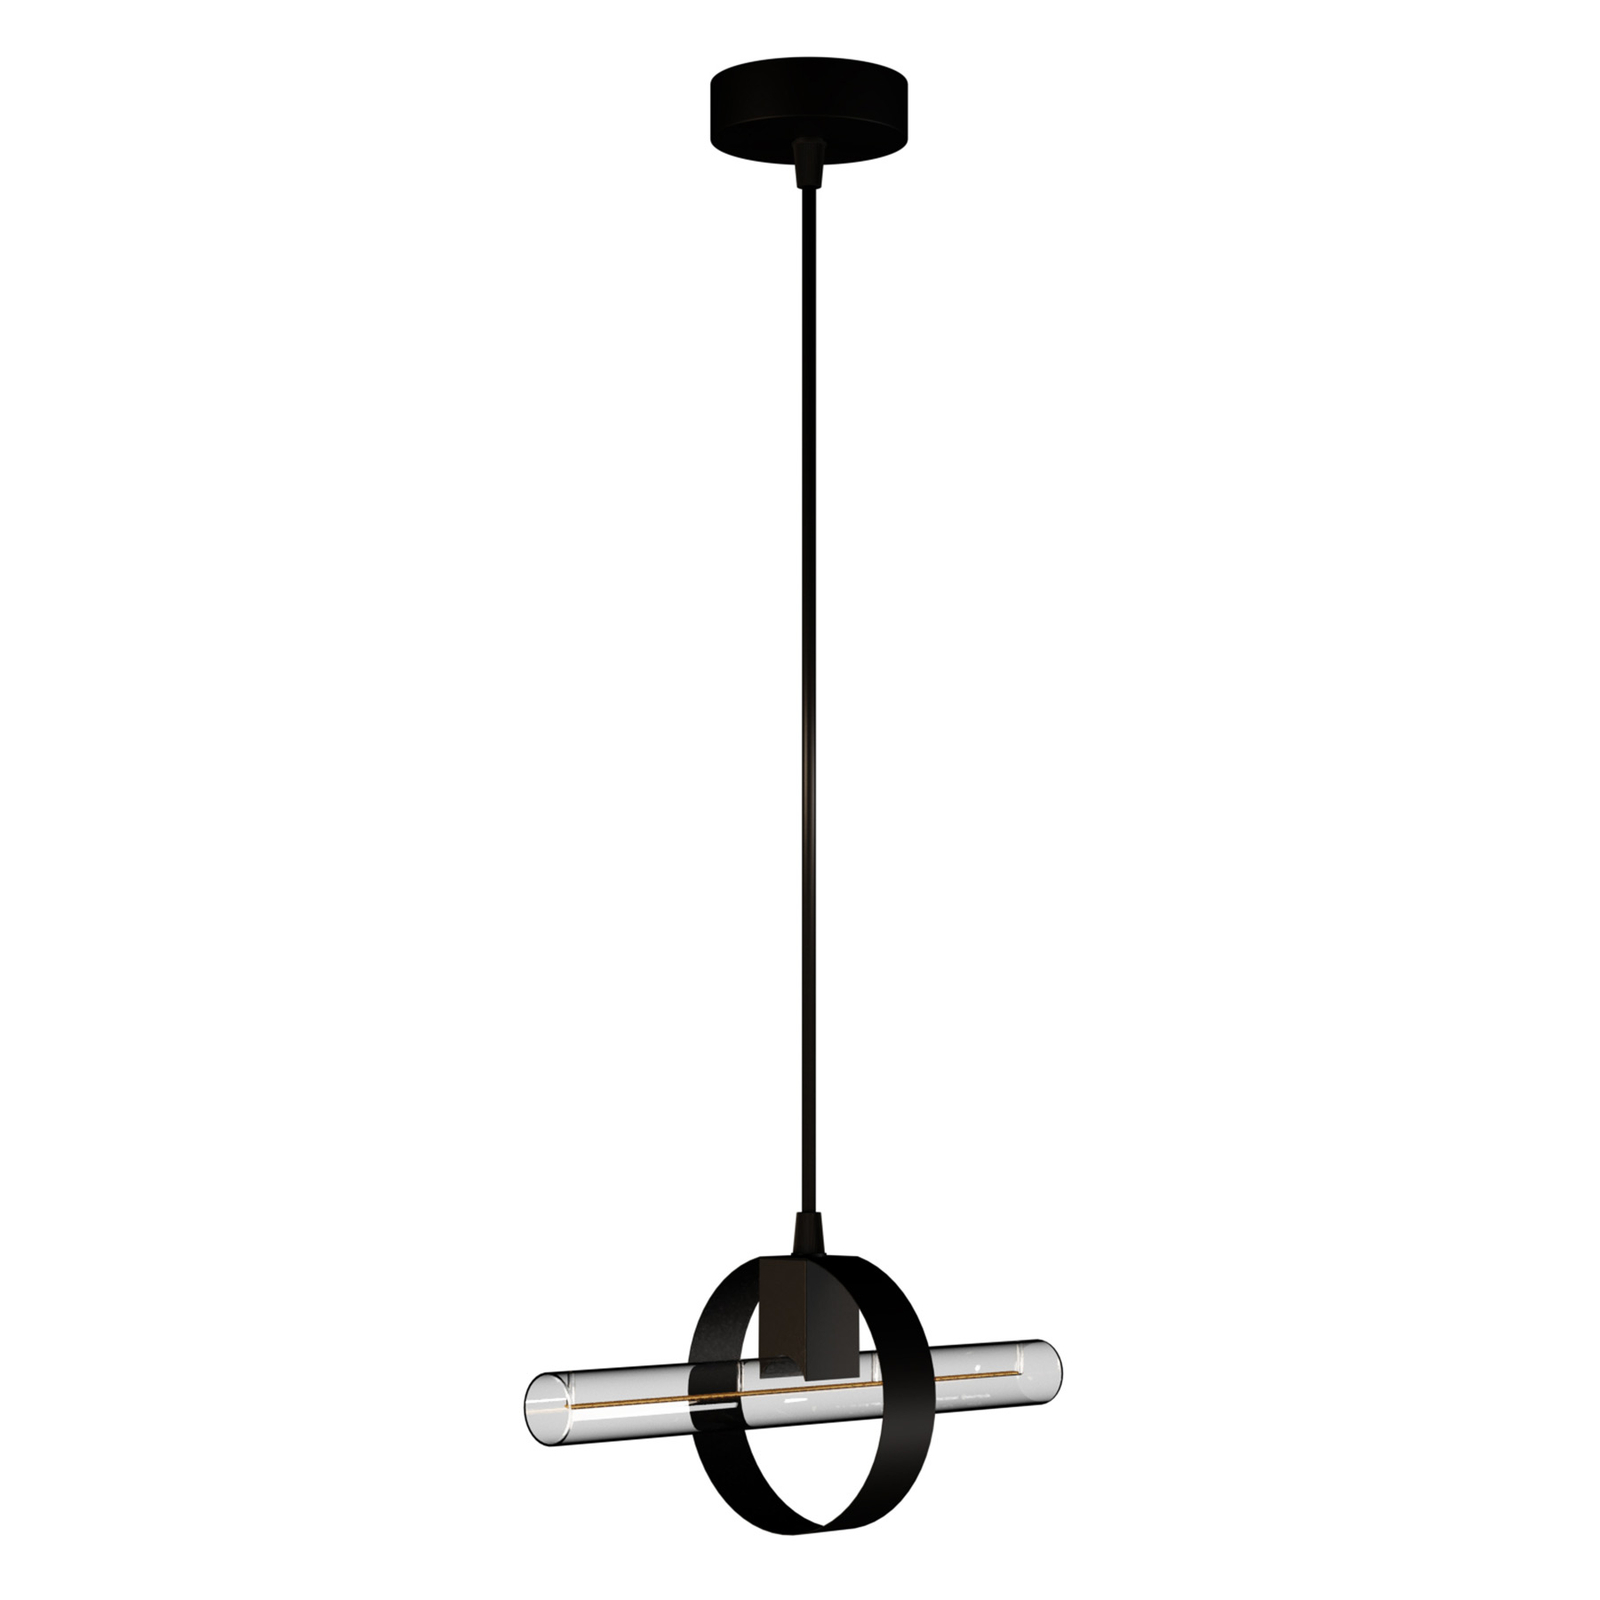 SEGULA hanglamp Level in modern ontwerp